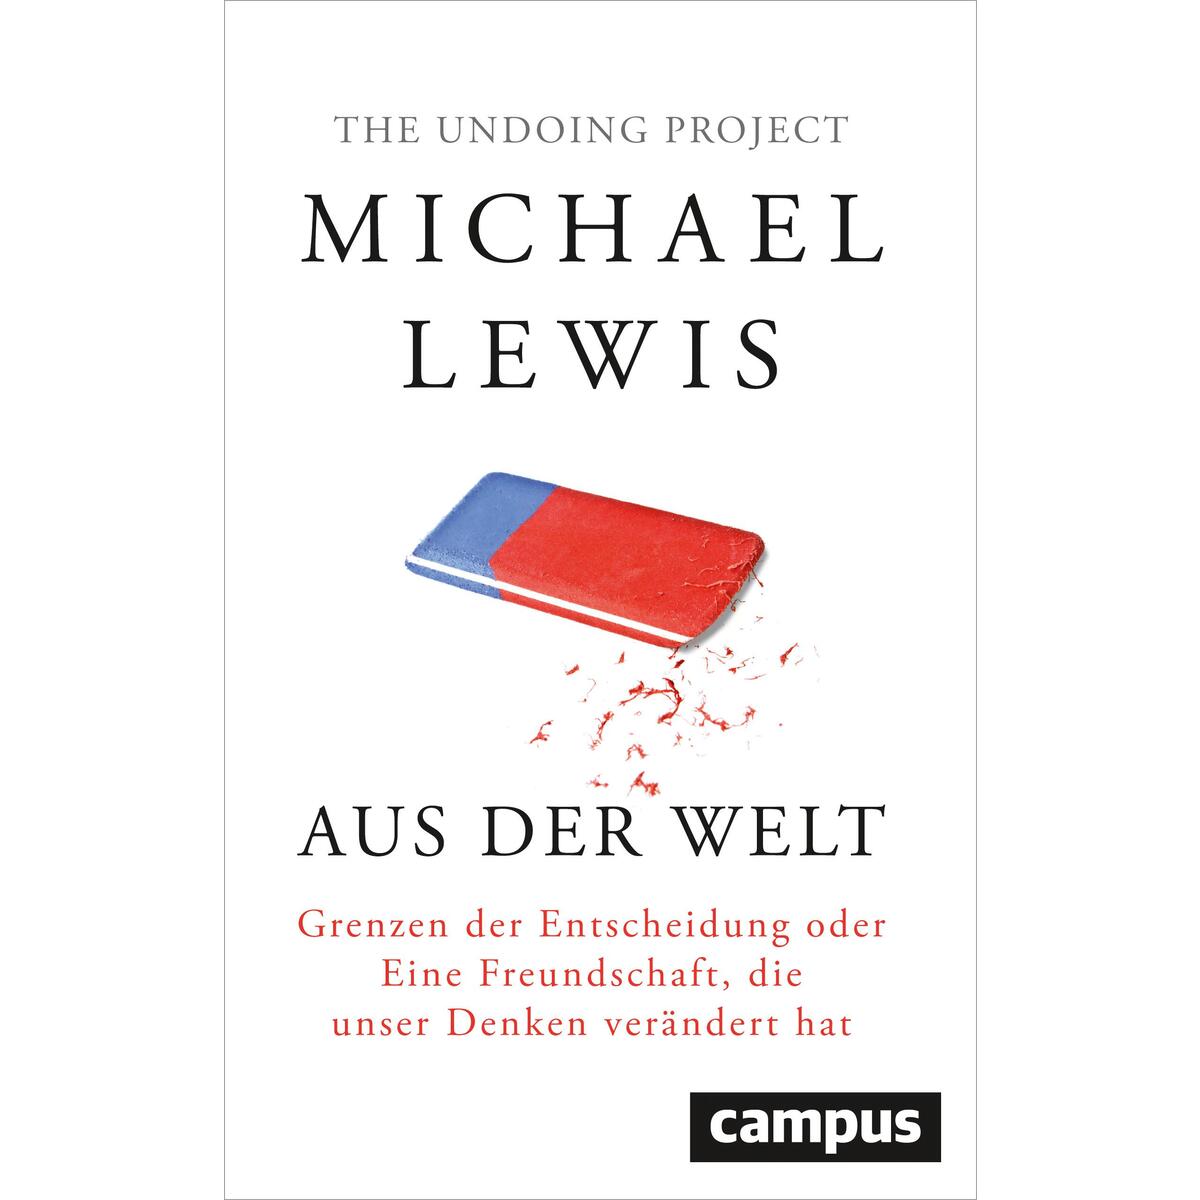 Aus der Welt von Campus Verlag GmbH